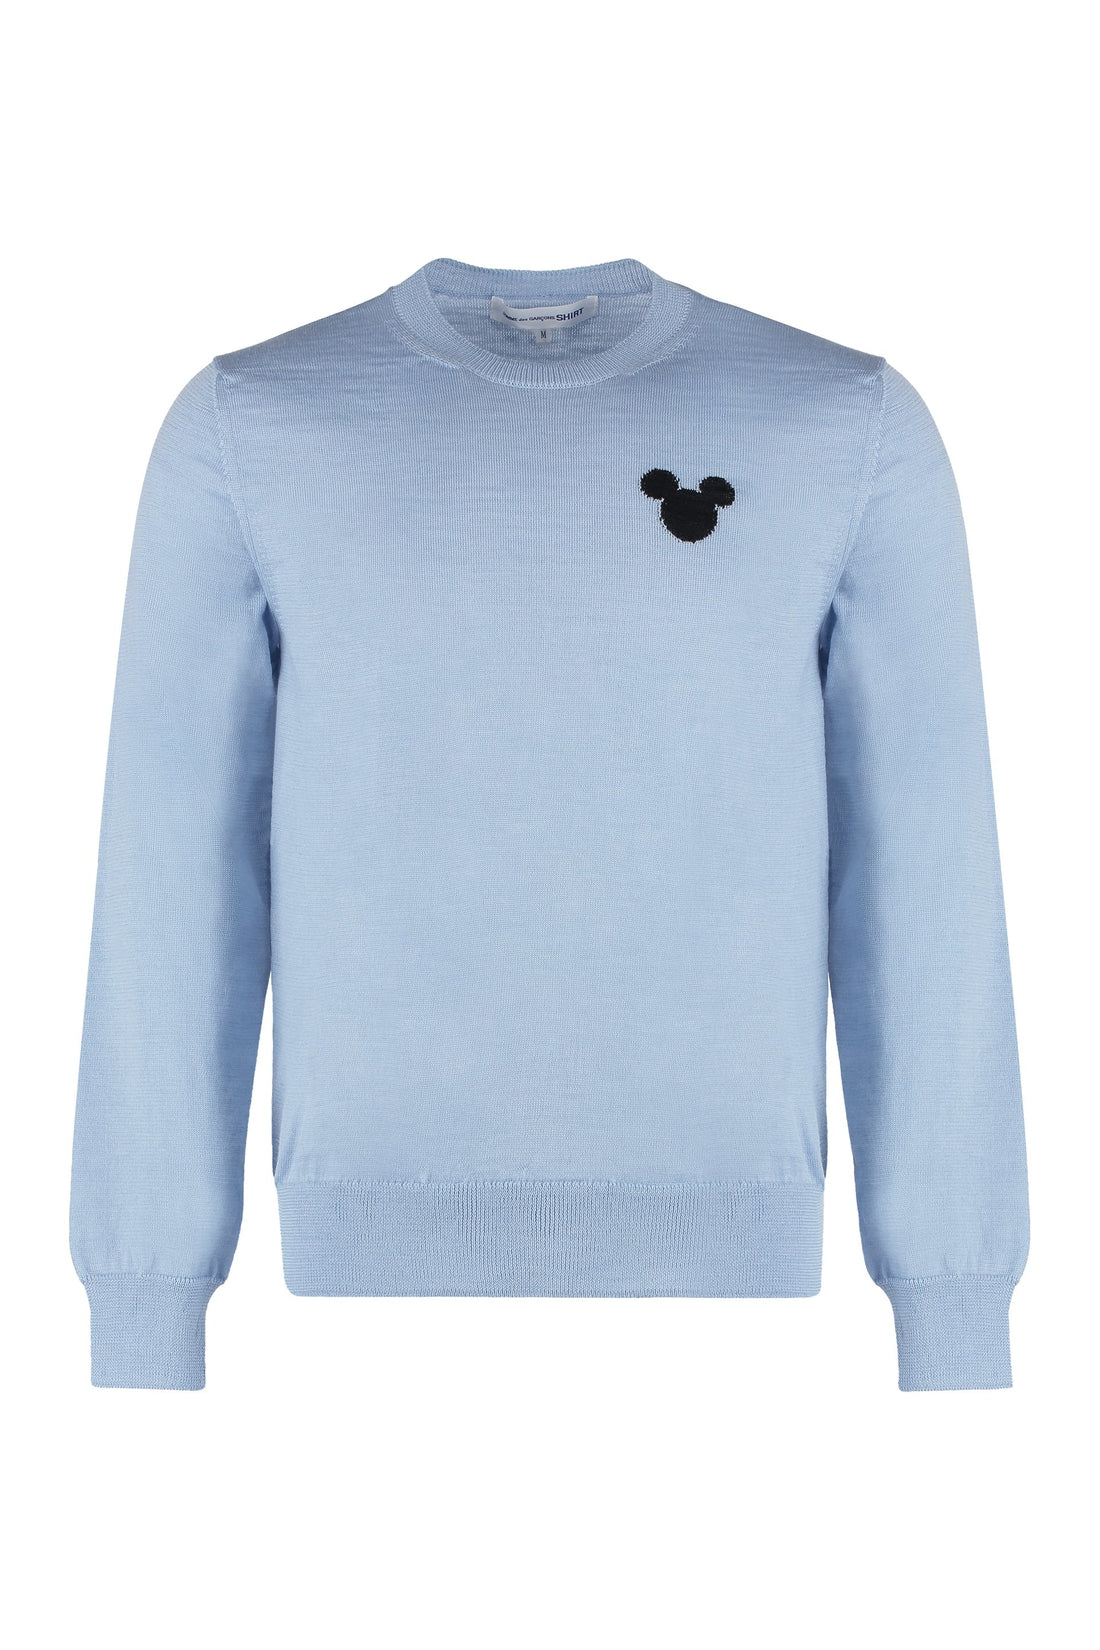 Comme des Garçons SHIRT-OUTLET-SALE-Comme Des Garçons Shirt x Disney - Long sleeve crew-neck sweater-ARCHIVIST